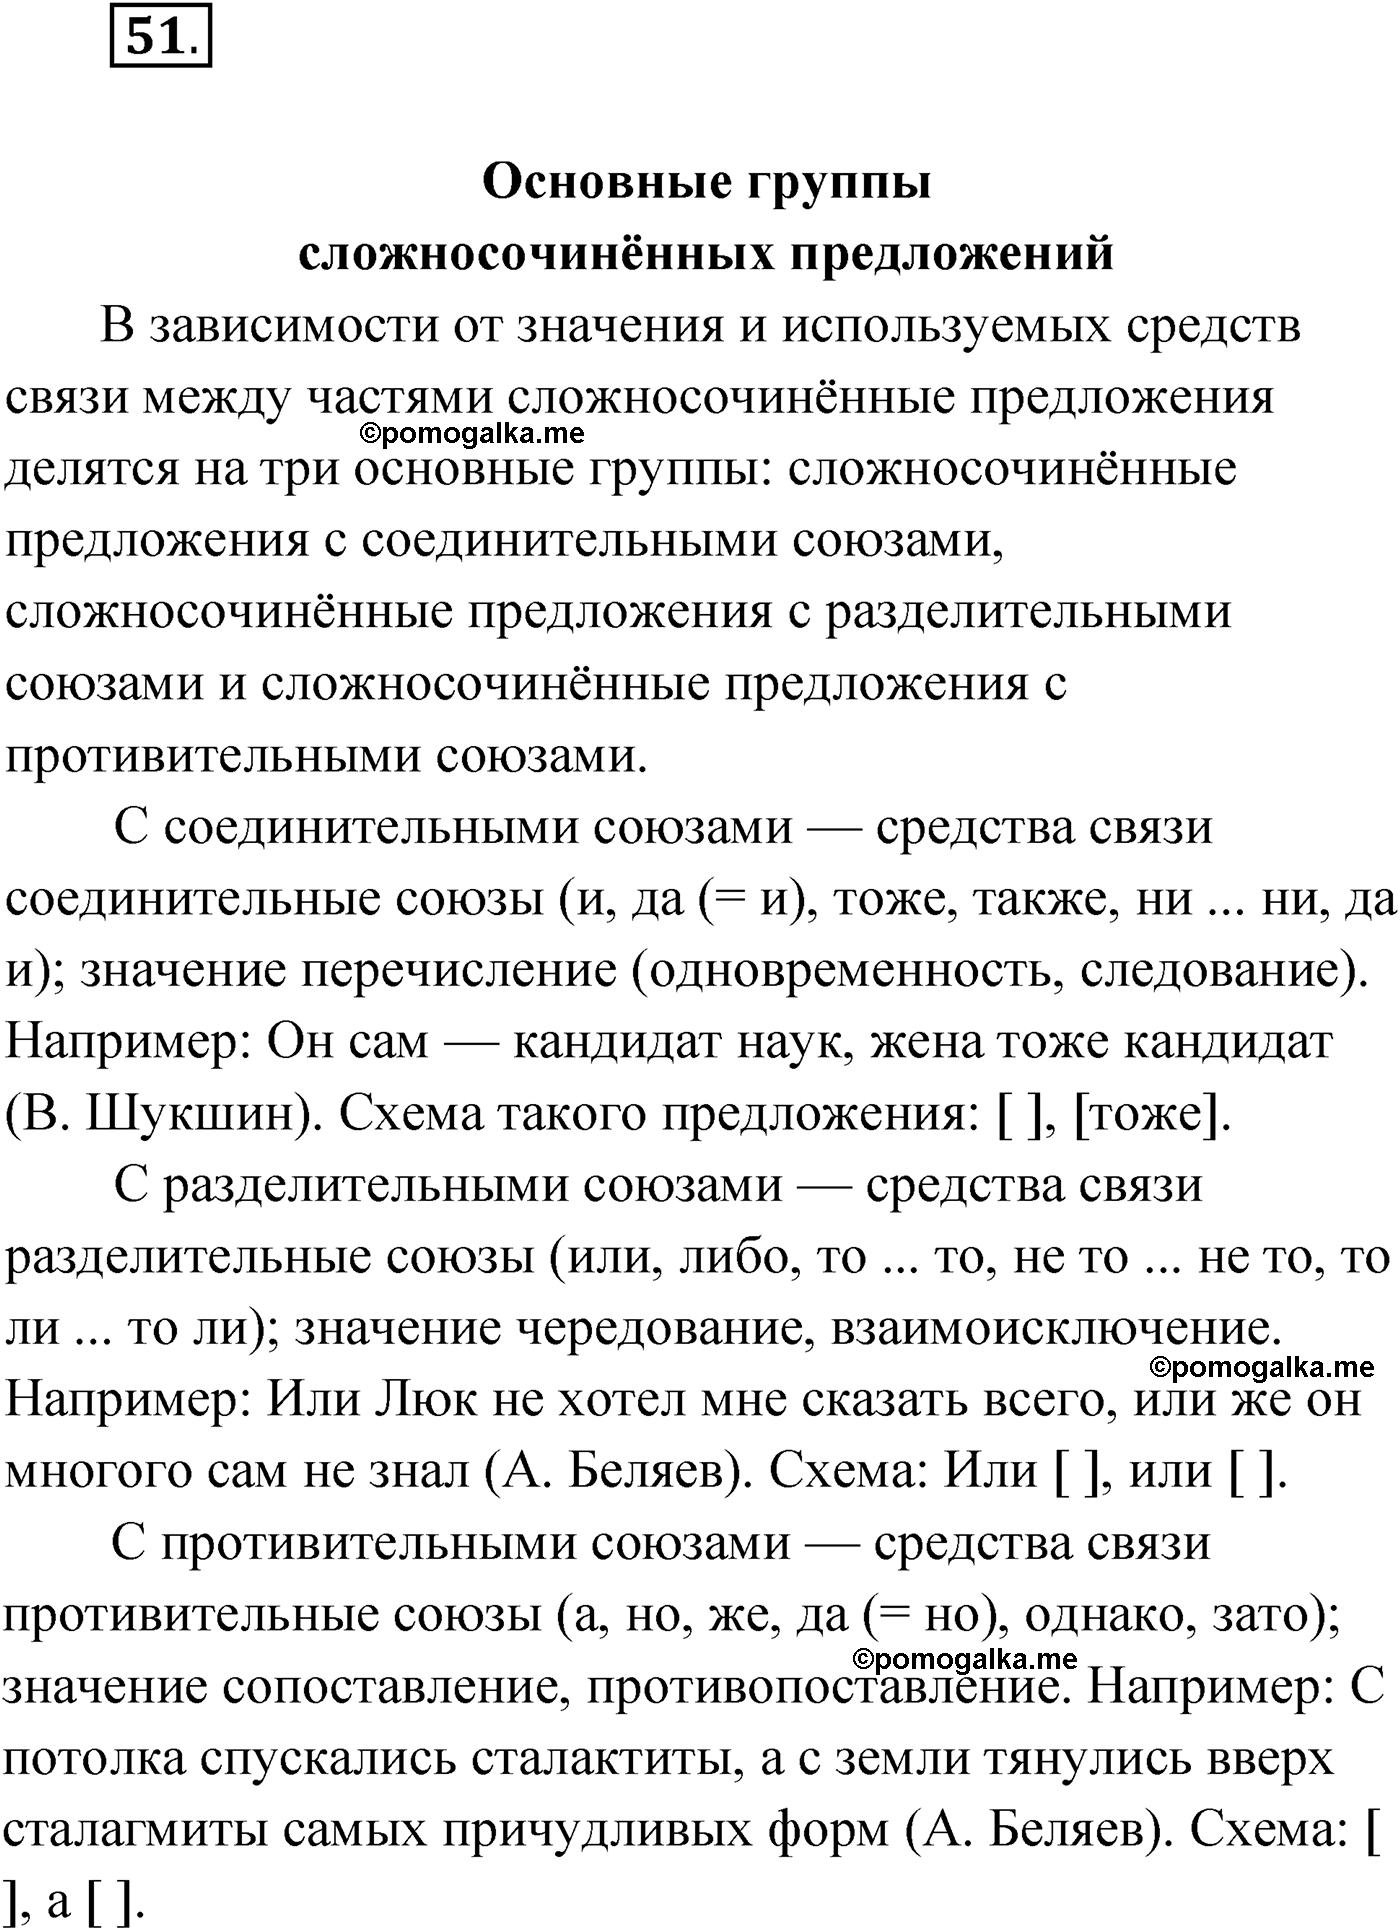 упражнение №51 русский язык 9 класс Мурина 2019 год